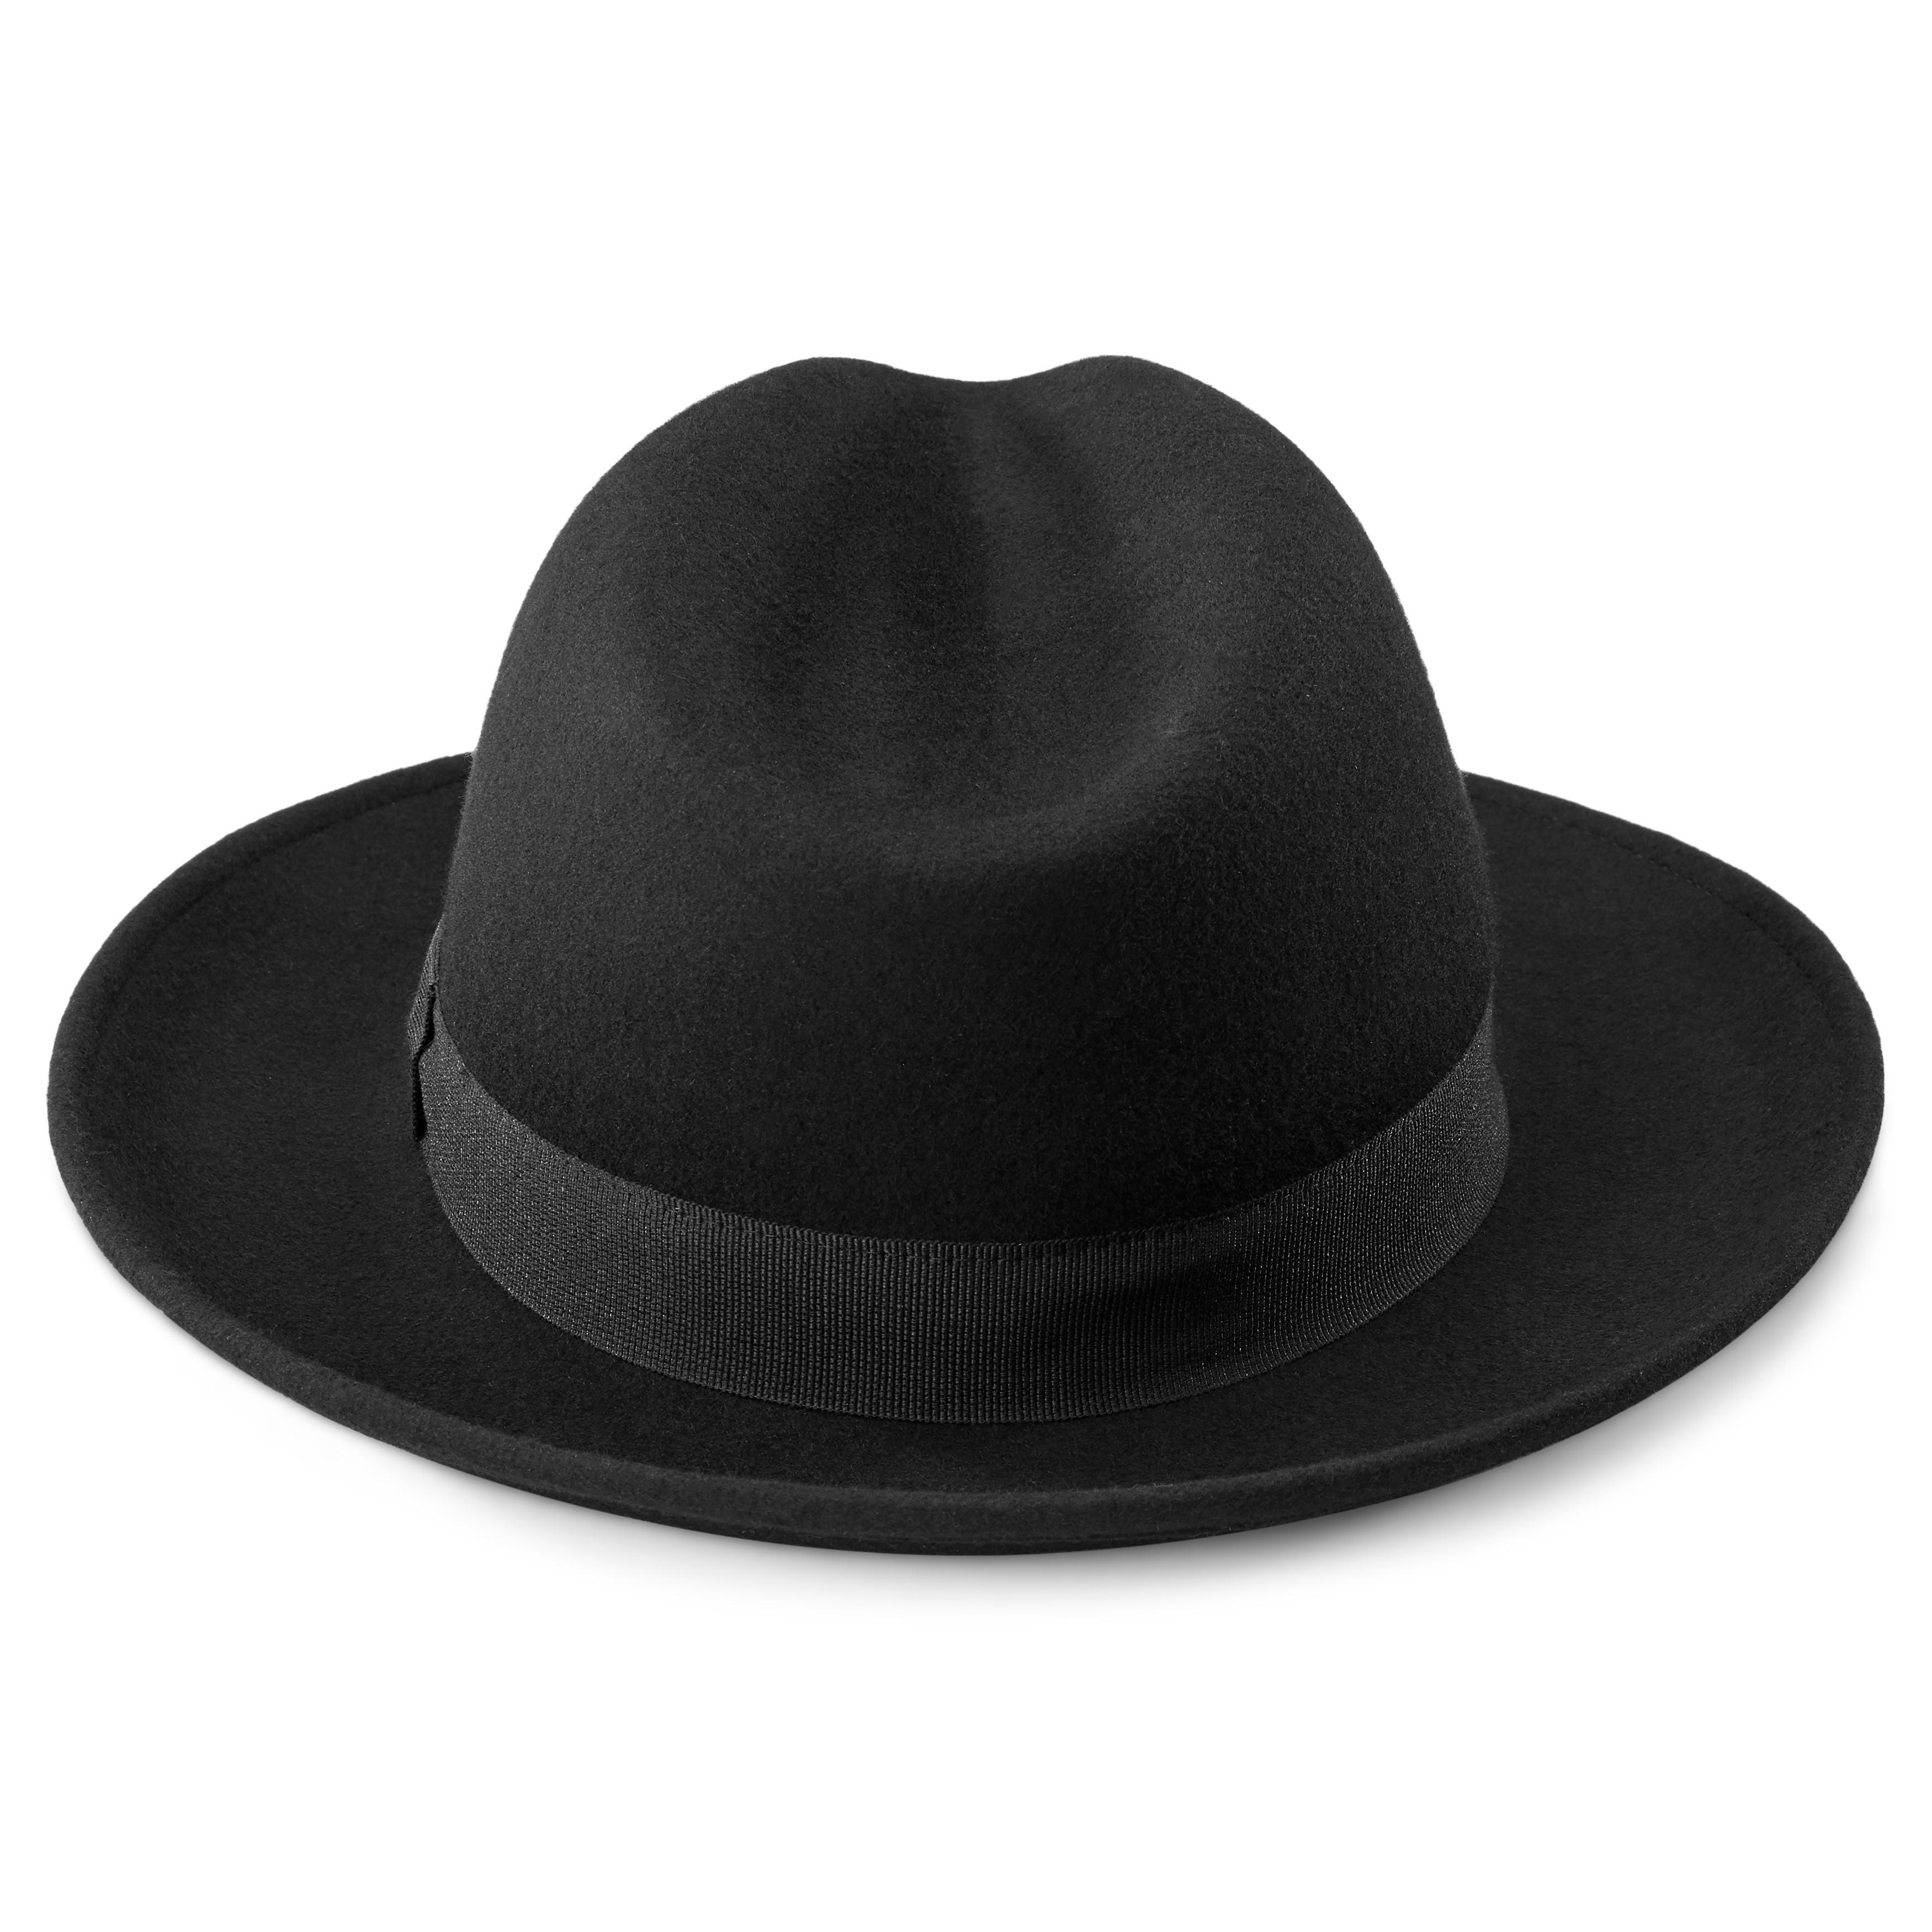 tell me Suppress Mediate Pălărie fedora Fido Alessandria din lână neagră | În stoc | Fawler